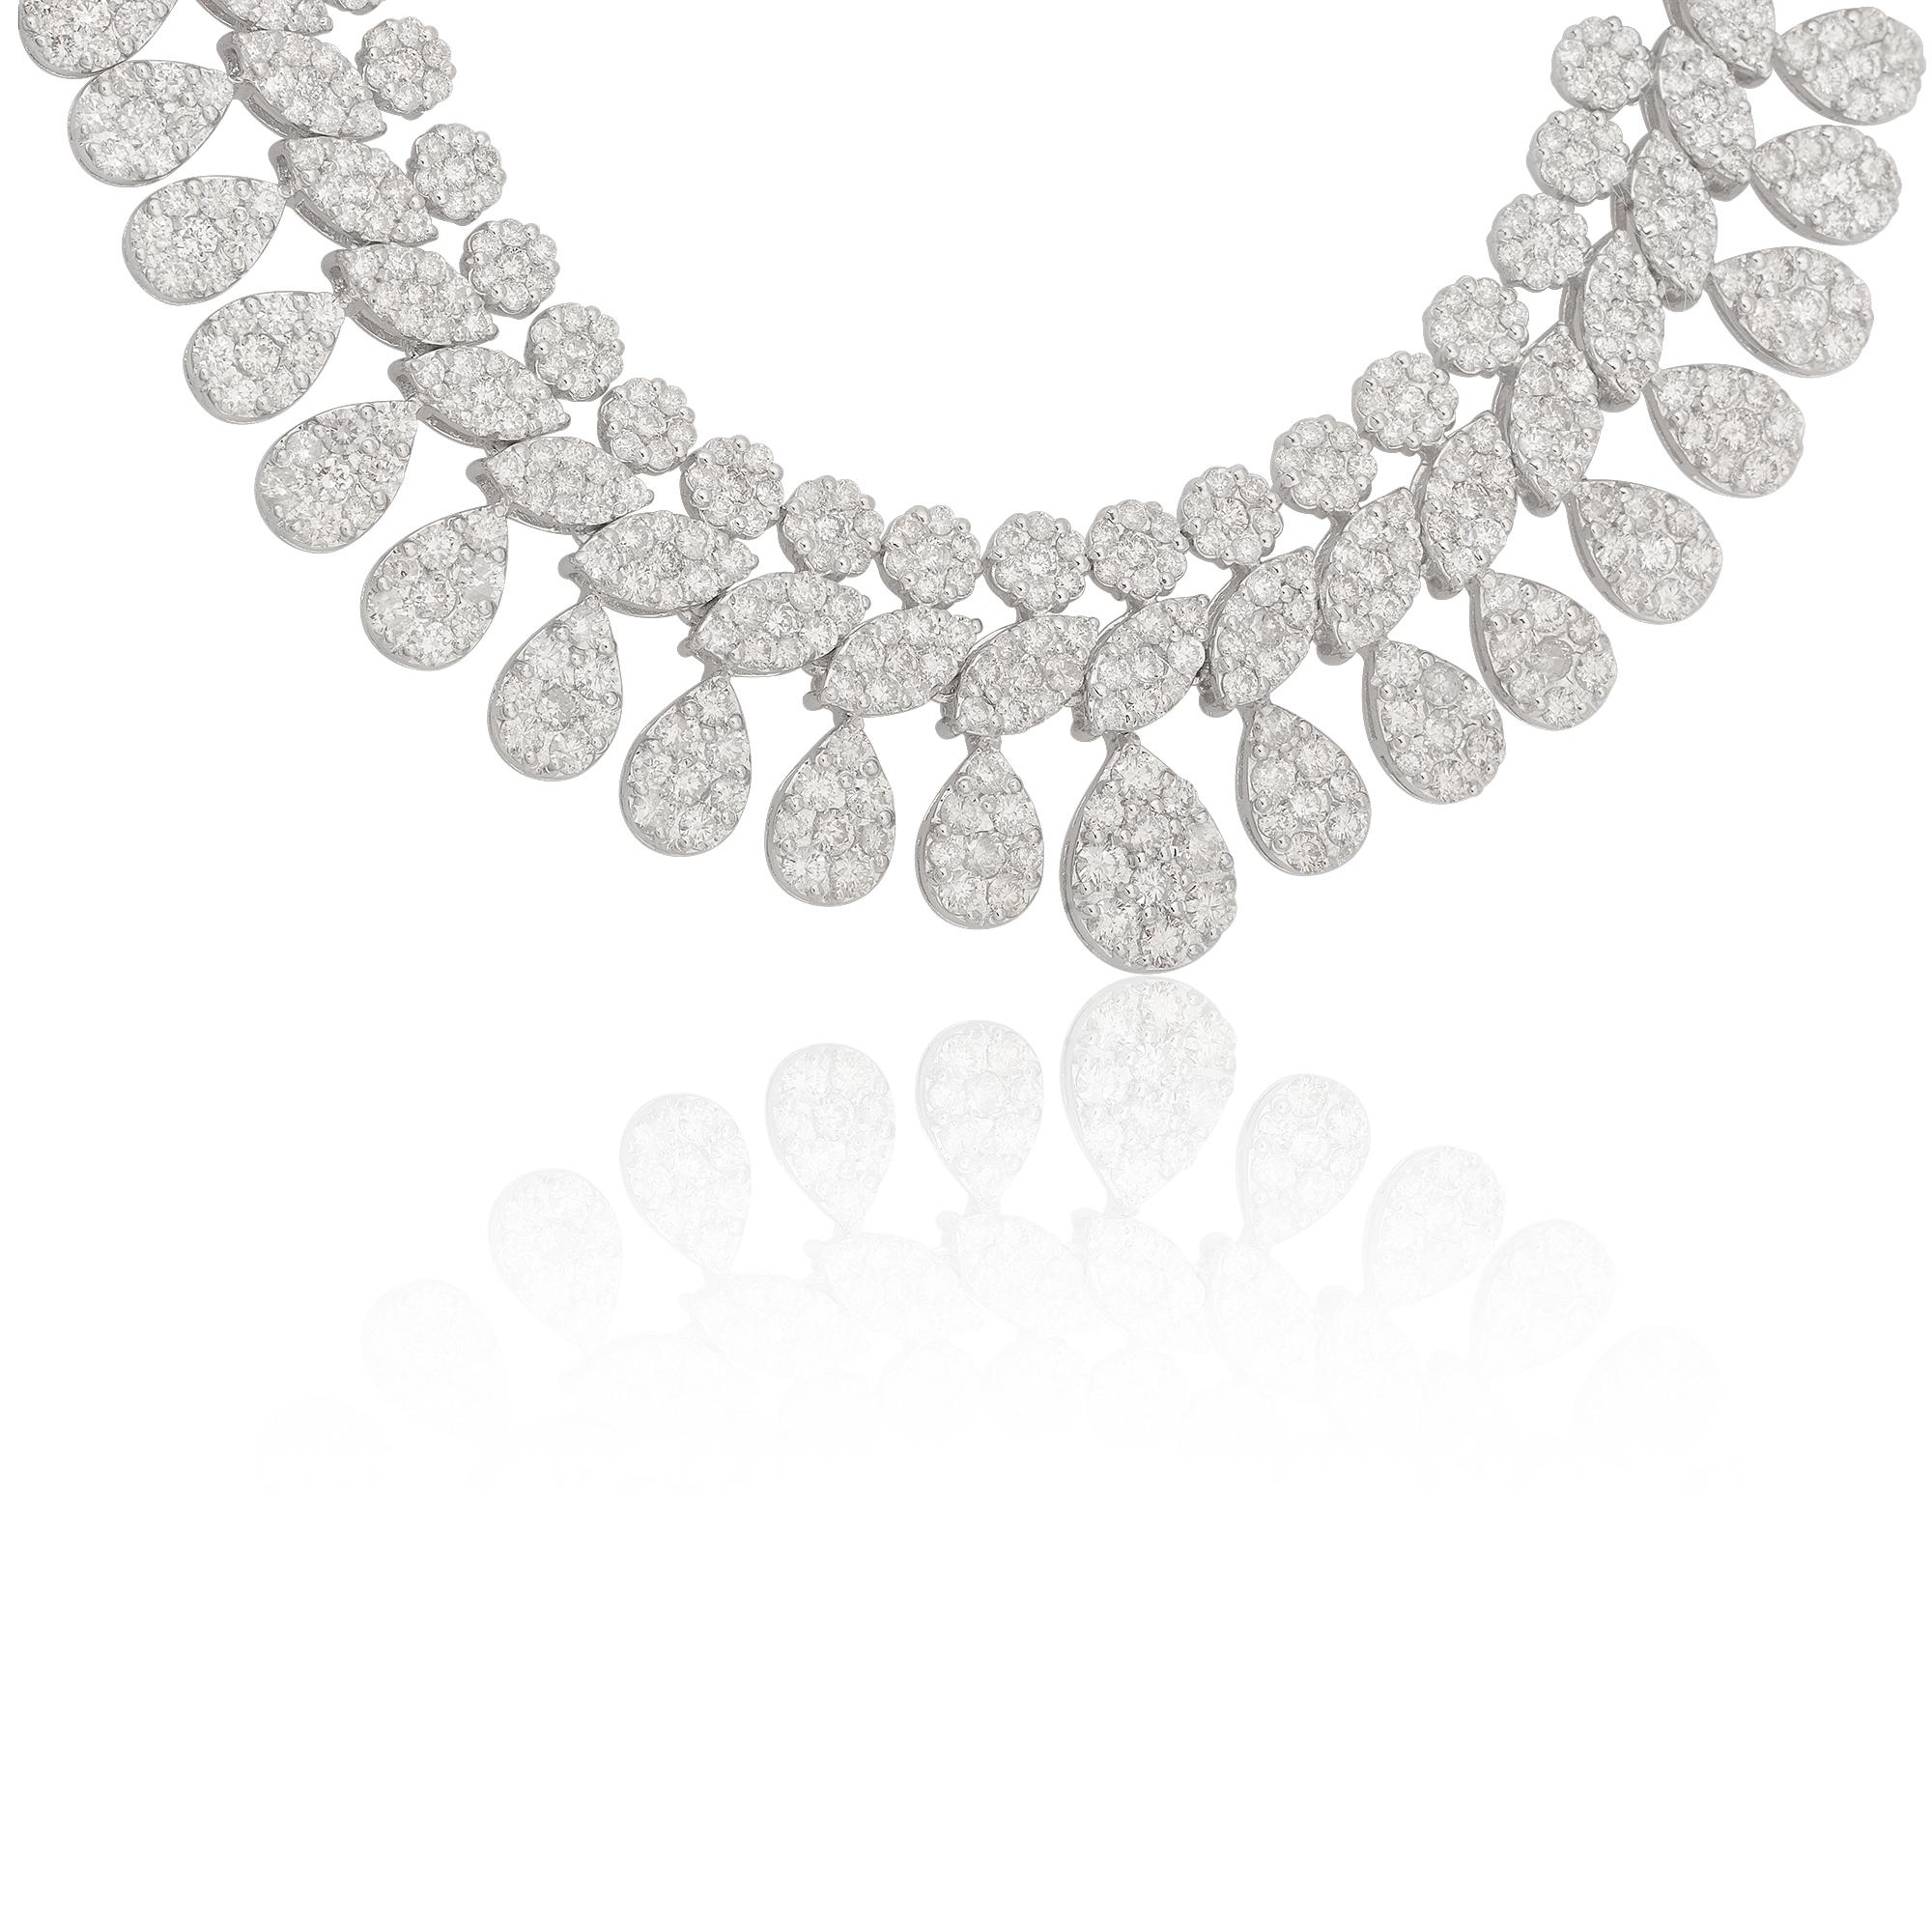 Ce collier ras-de-cou en diamants est une pièce d'apparat qui respire la sophistication et le luxe. Il est parfait pour les occasions spéciales, les événements sur tapis rouge ou tout autre moment où vous souhaitez faire une impression durable.